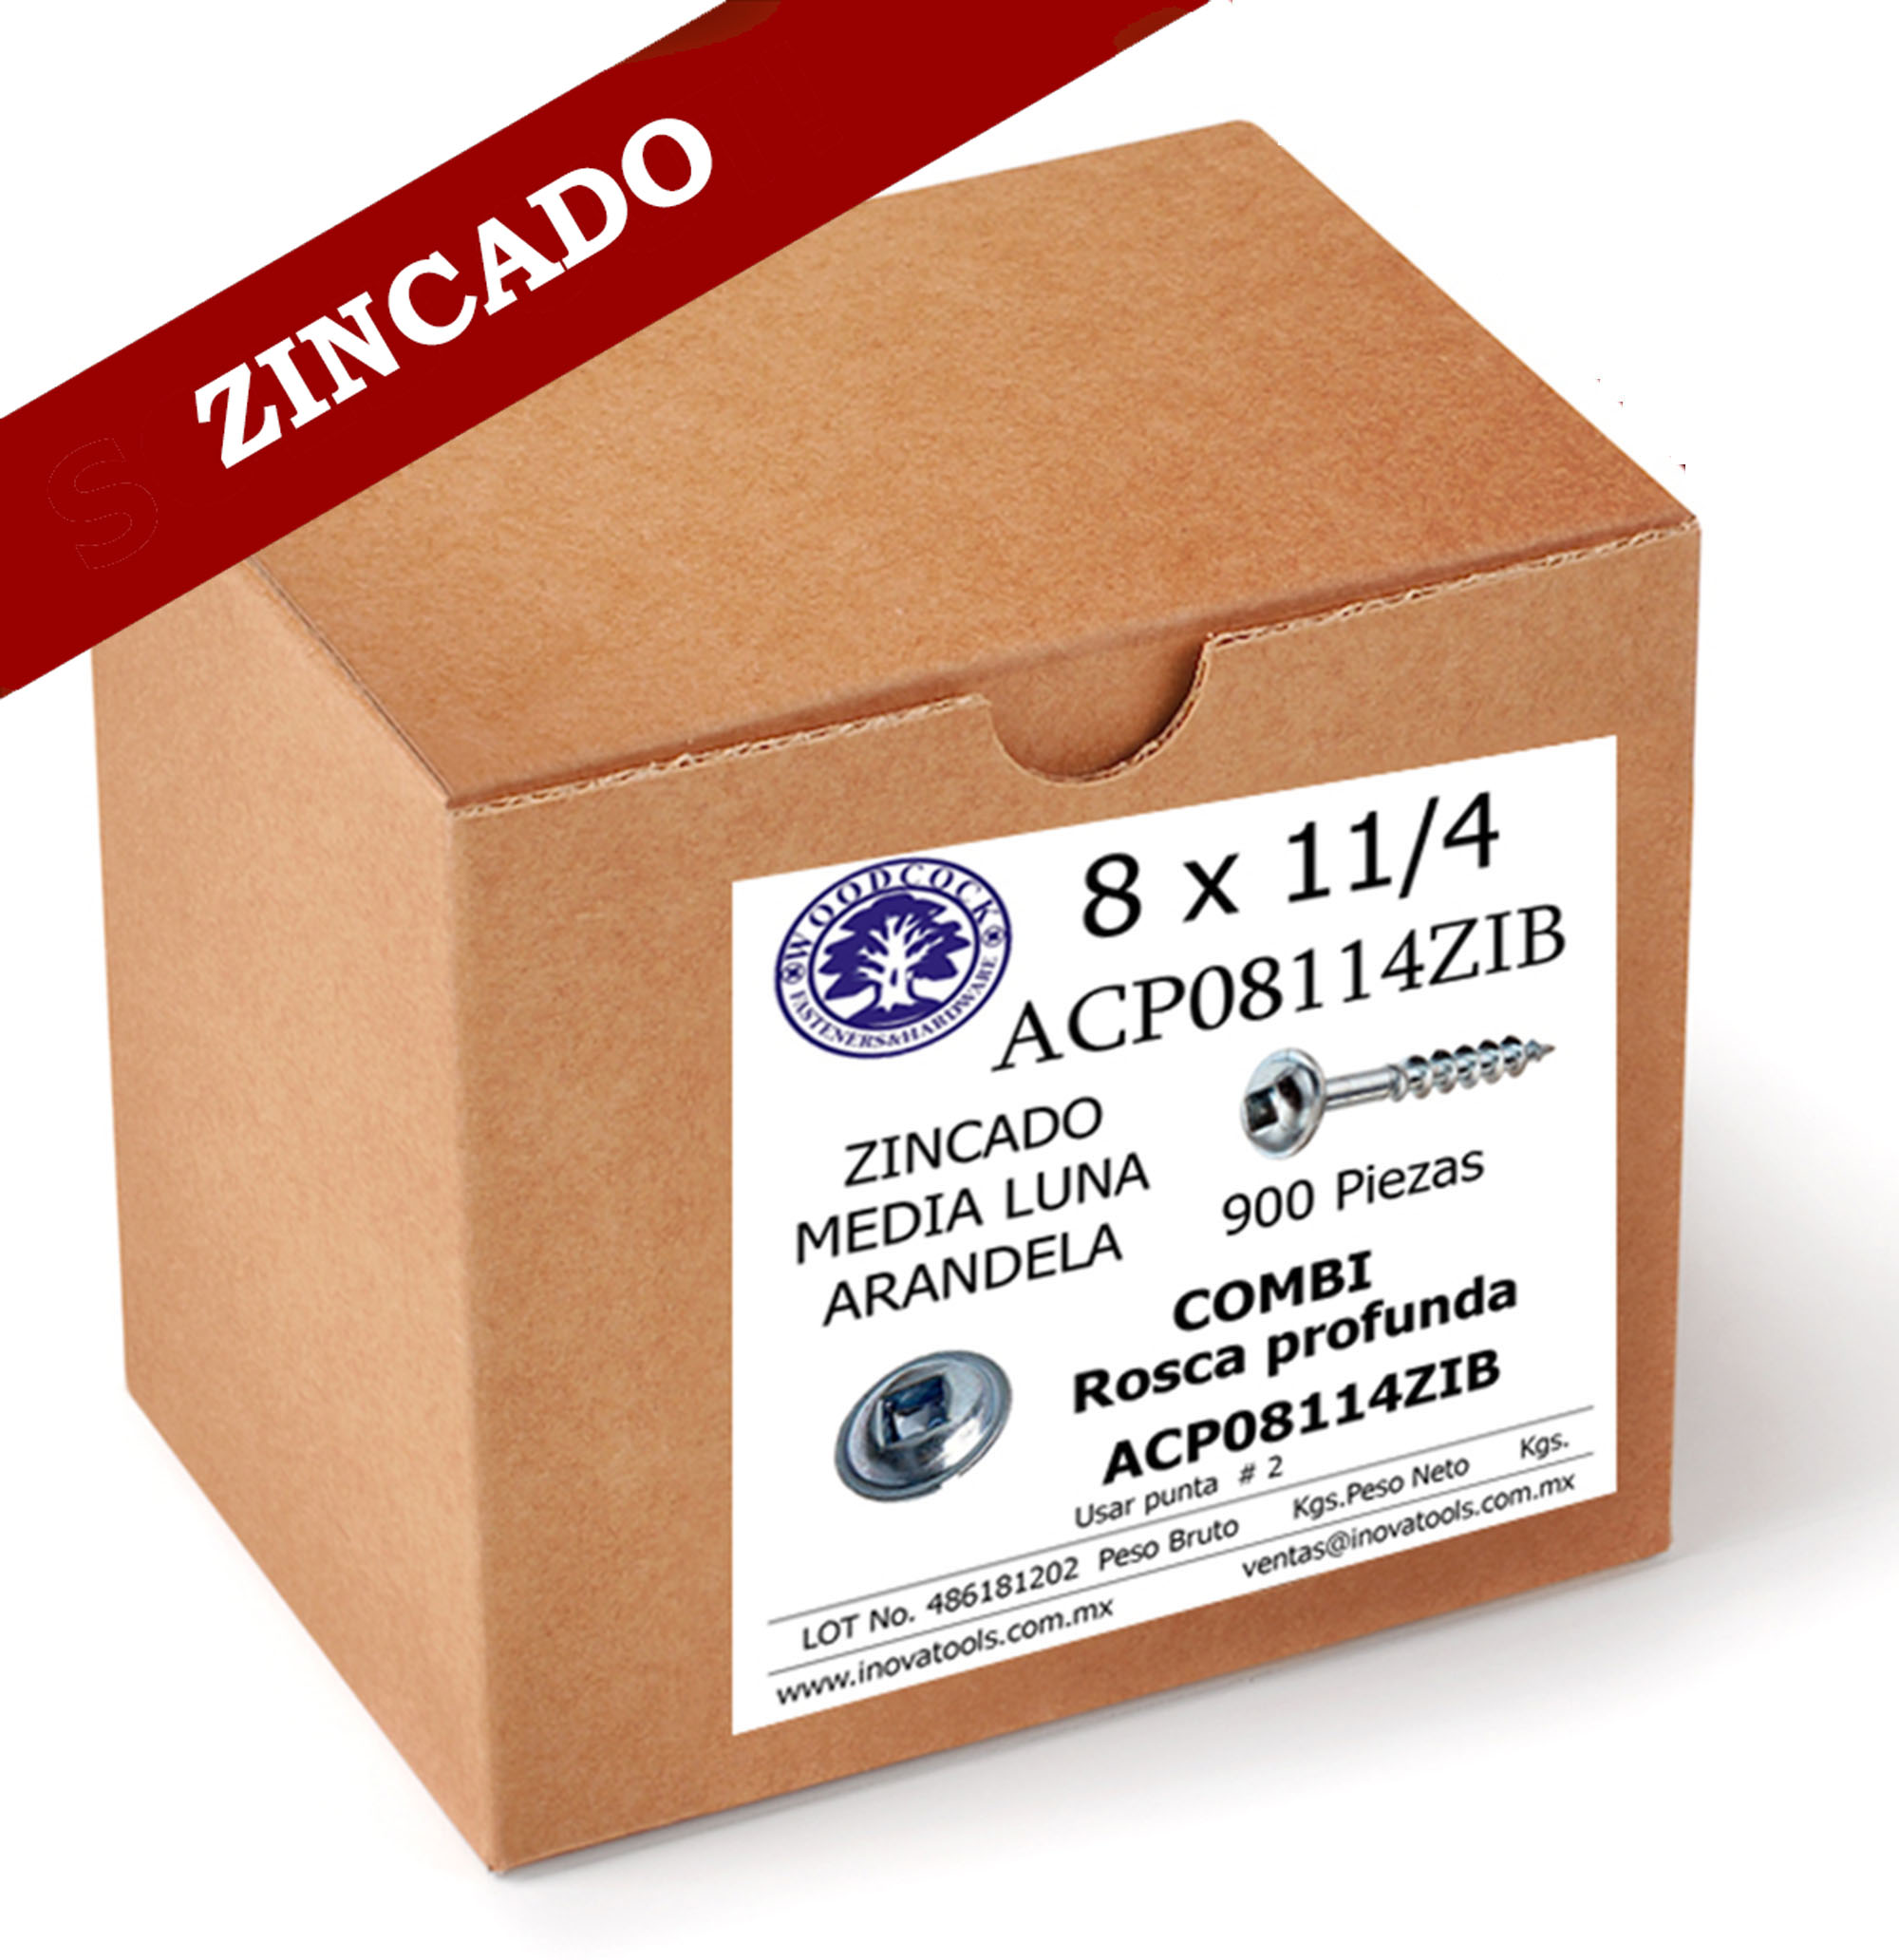 Tornillo Con Arandela 8 x 1 1/4 ZINC Caja 900 Piezas